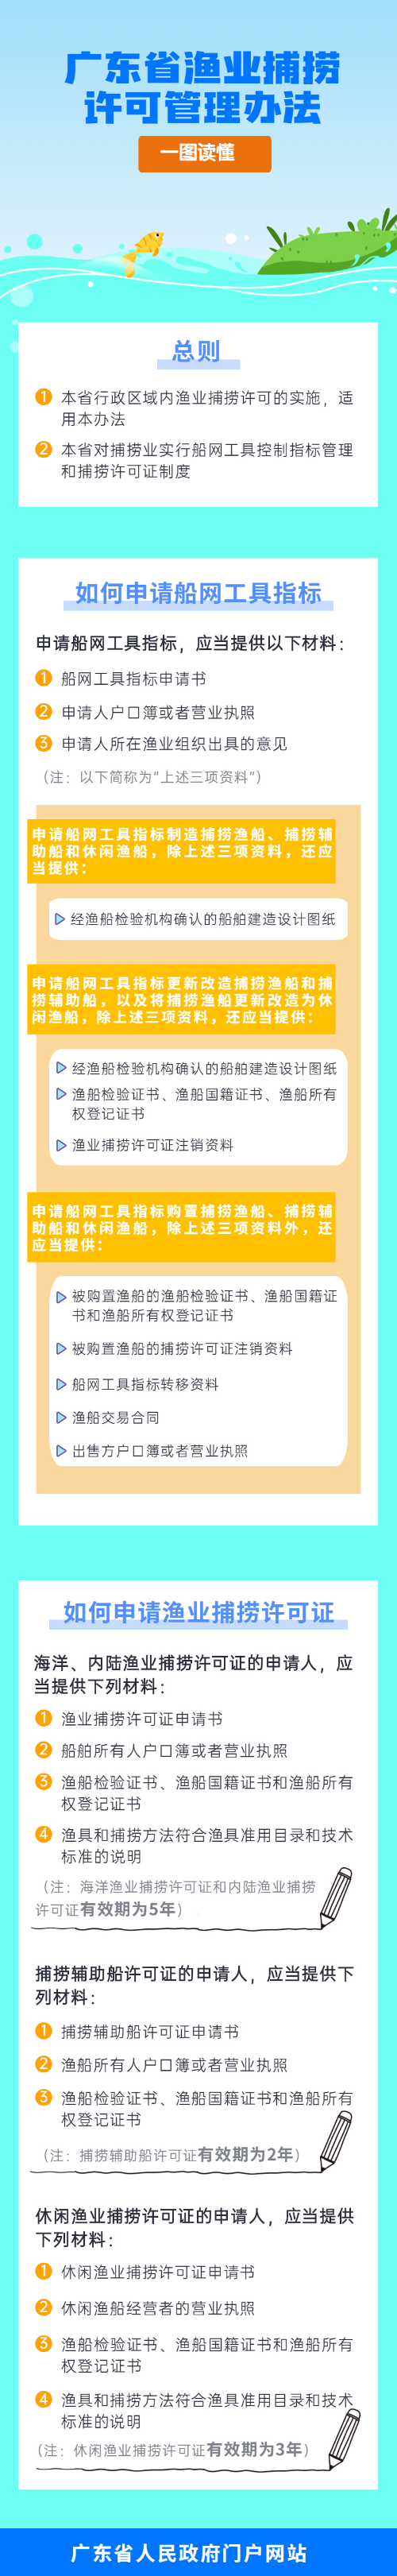 一图读懂广东省渔业捕捞许可管理办法.jpg